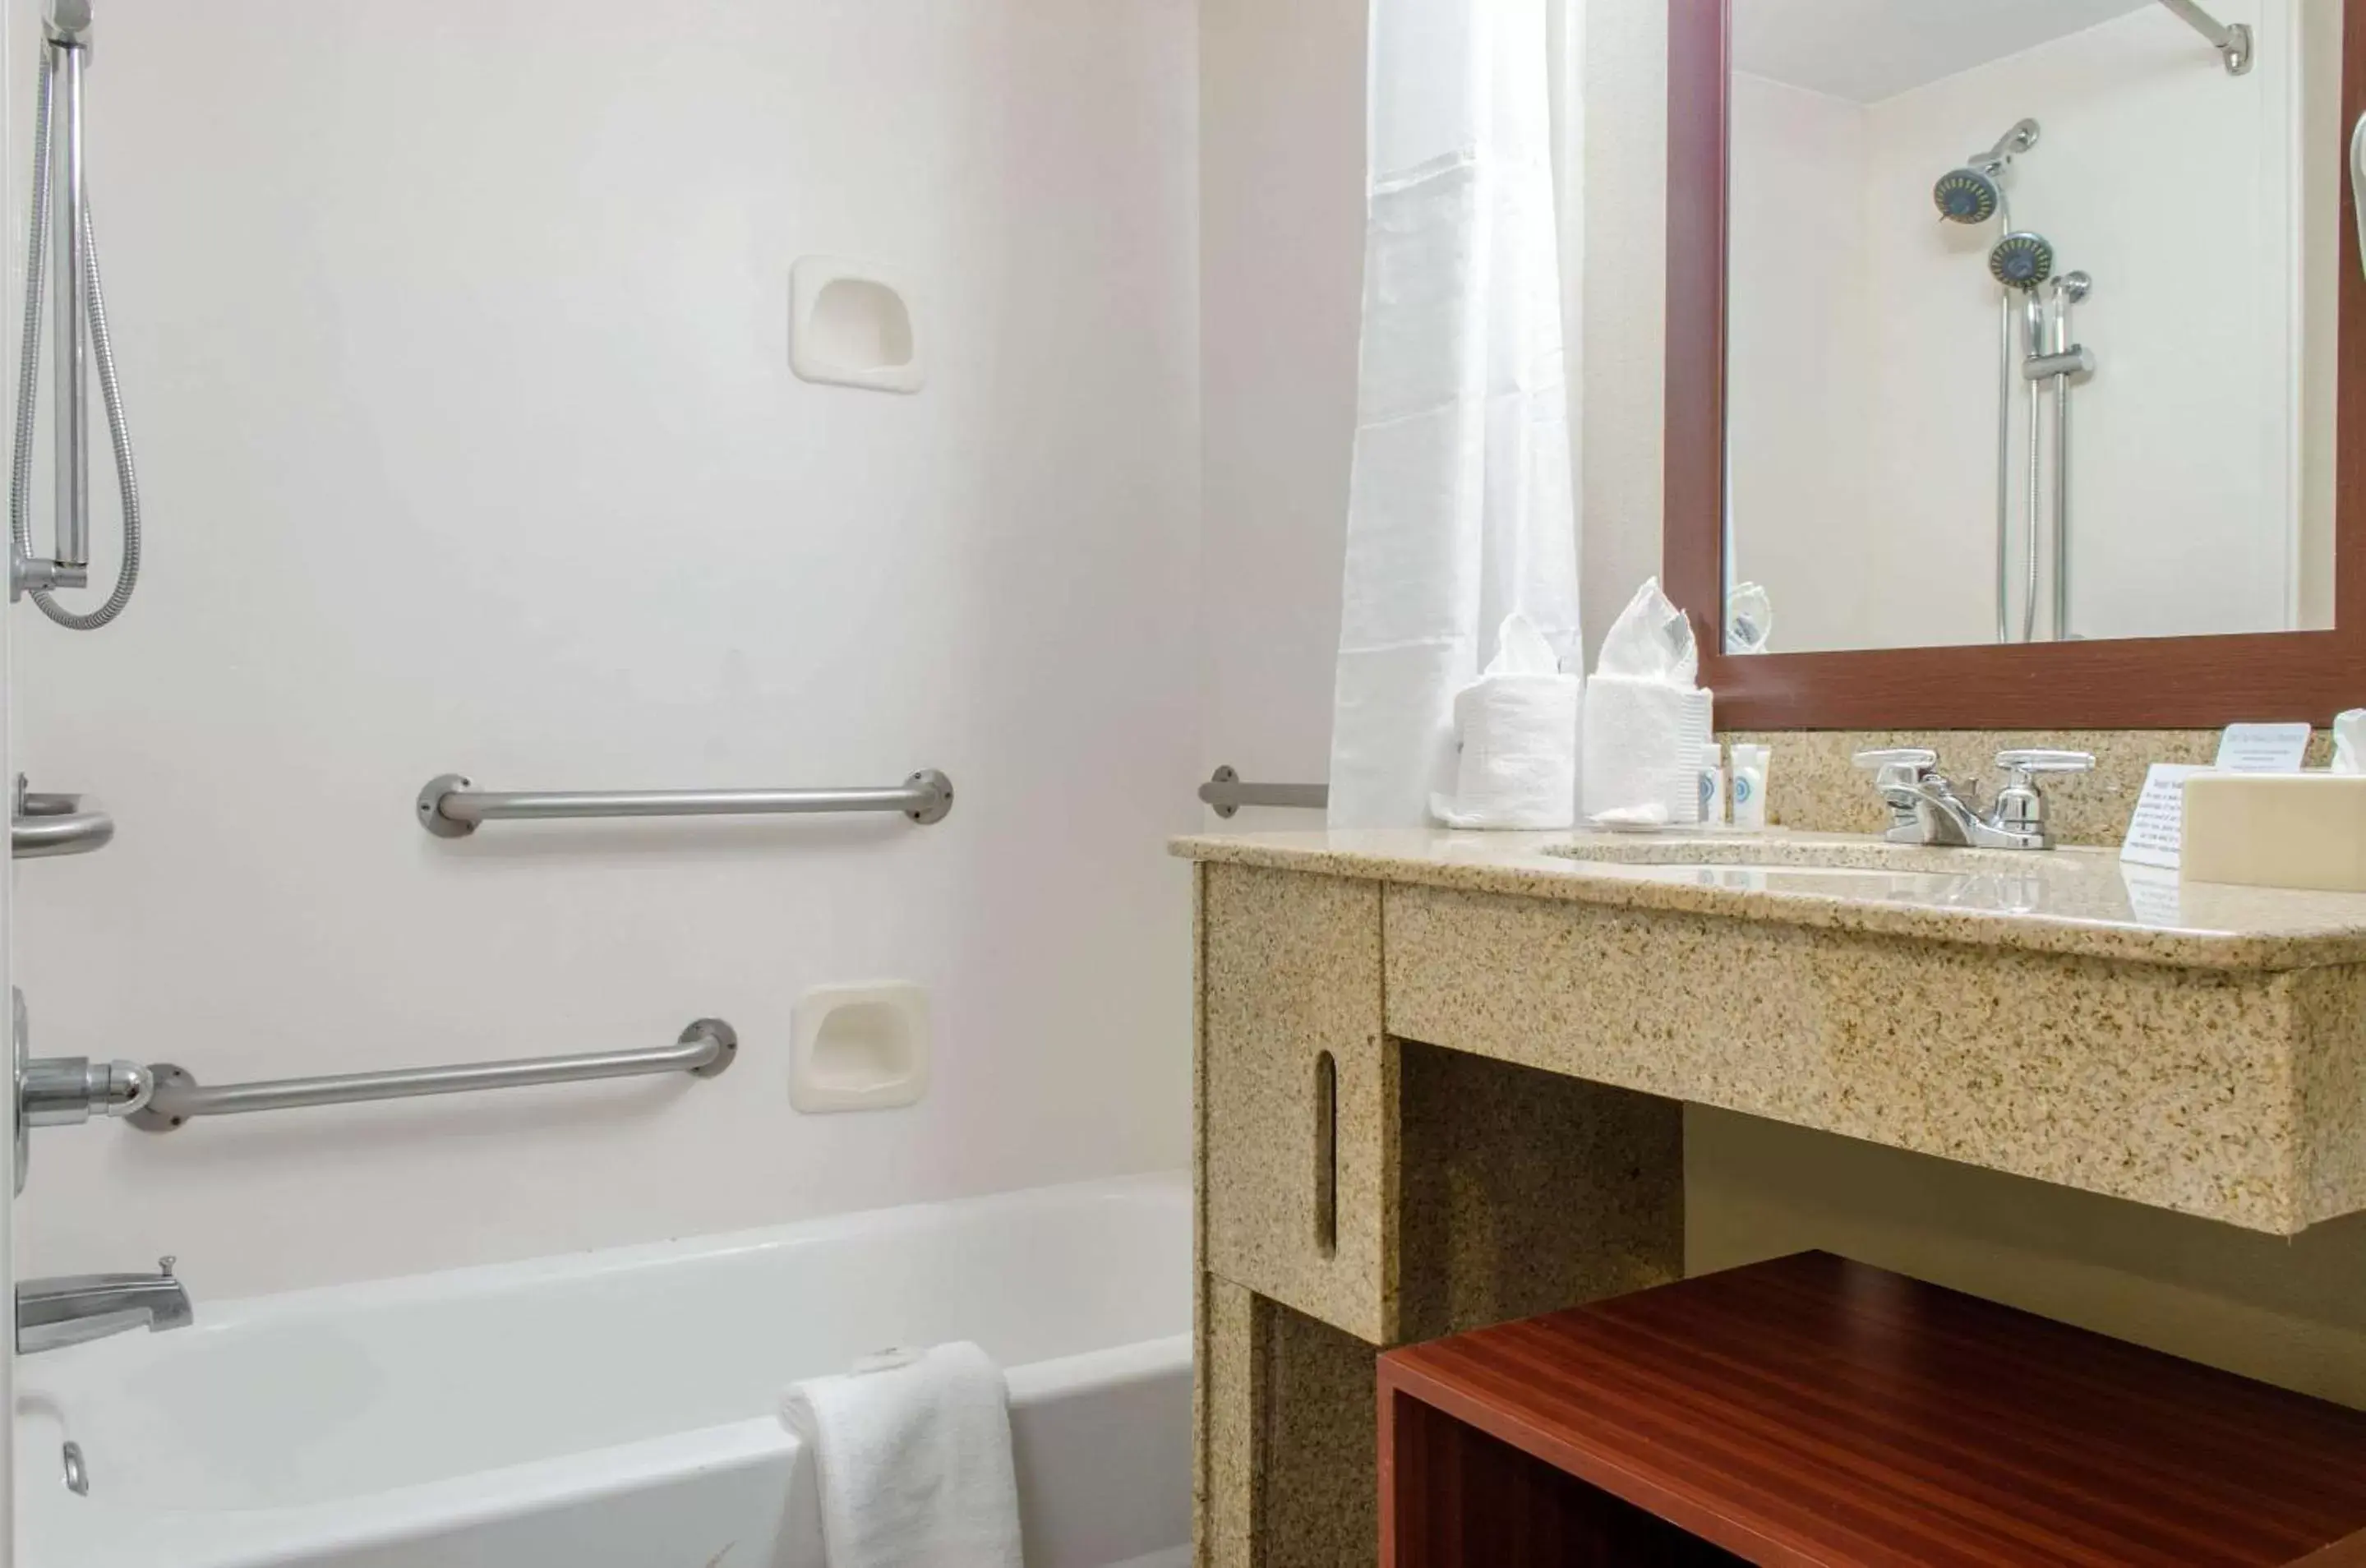 Bathroom in Comfort Inn & Suites Biloxi D'Iberville